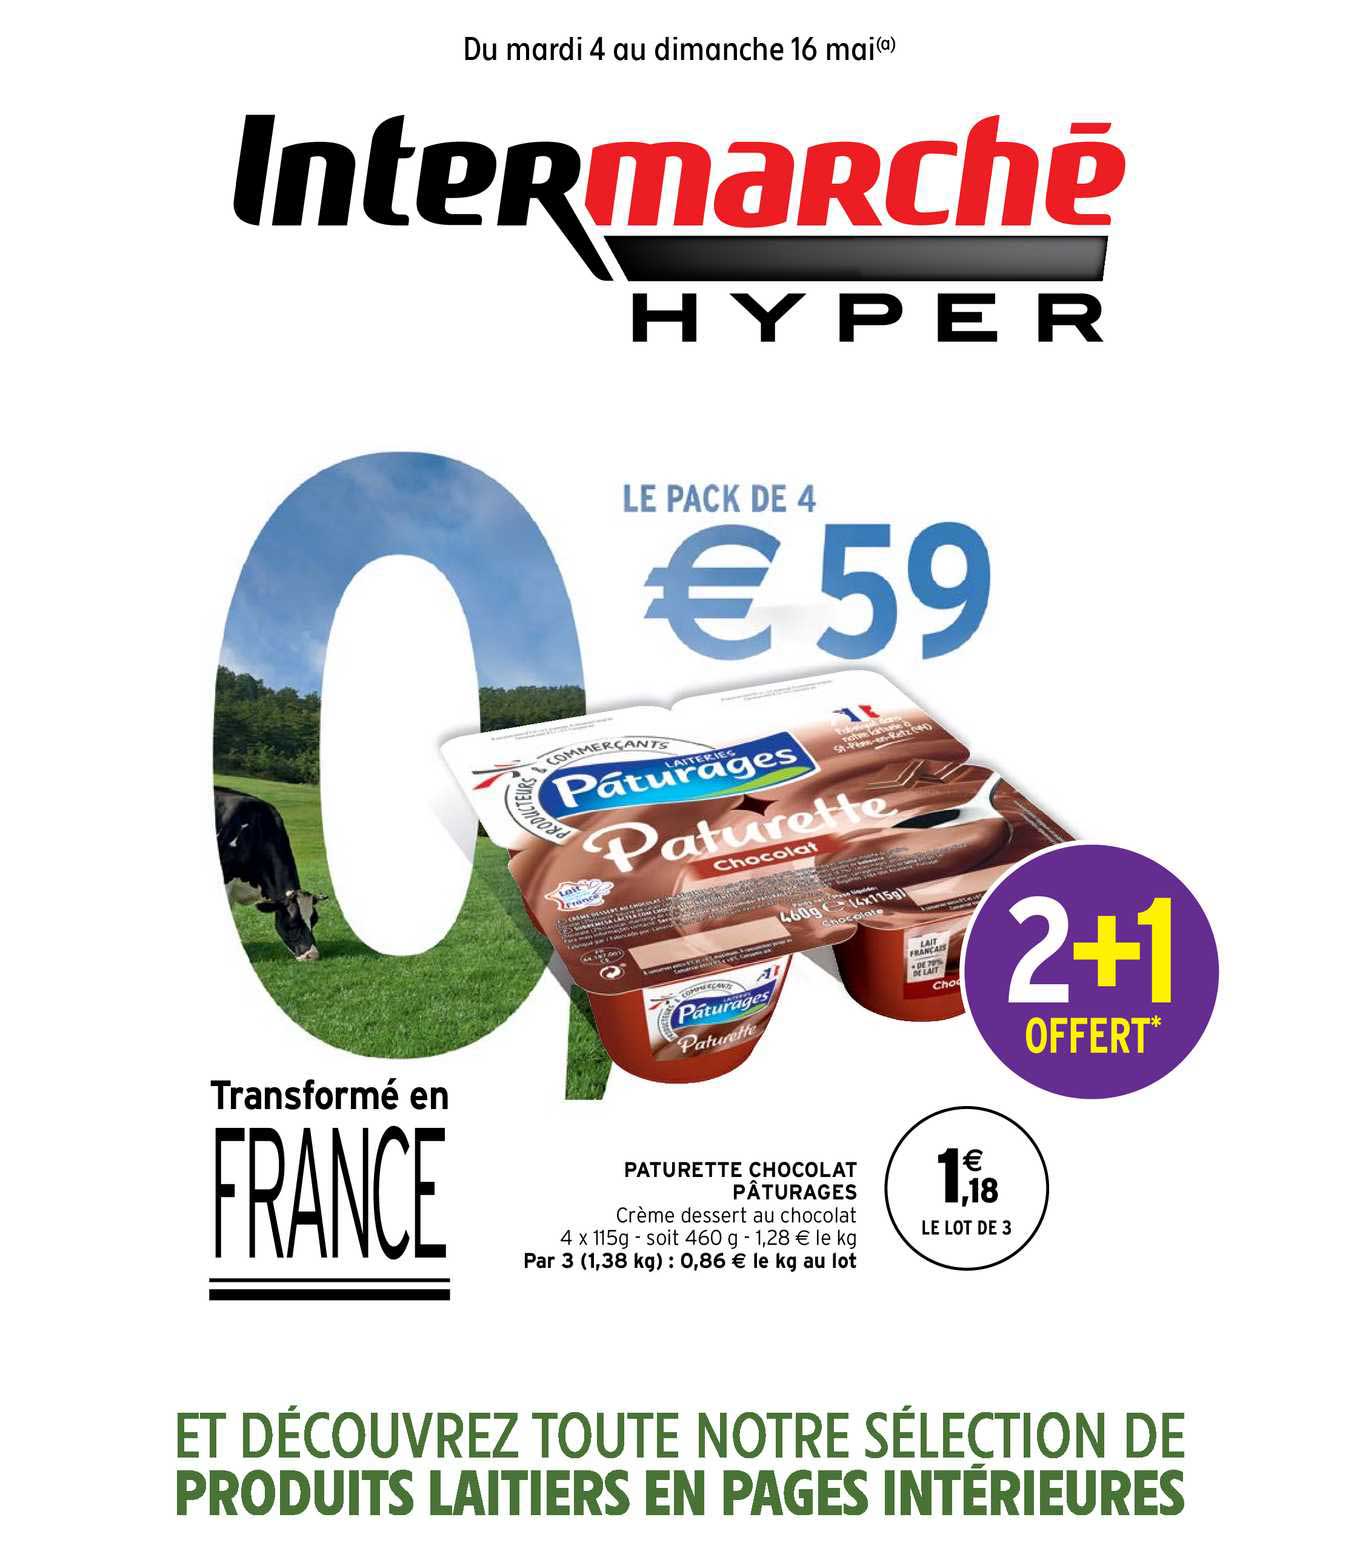 Offre Pâturette Chocolat Pâturages Chez Intermarche Hyper 